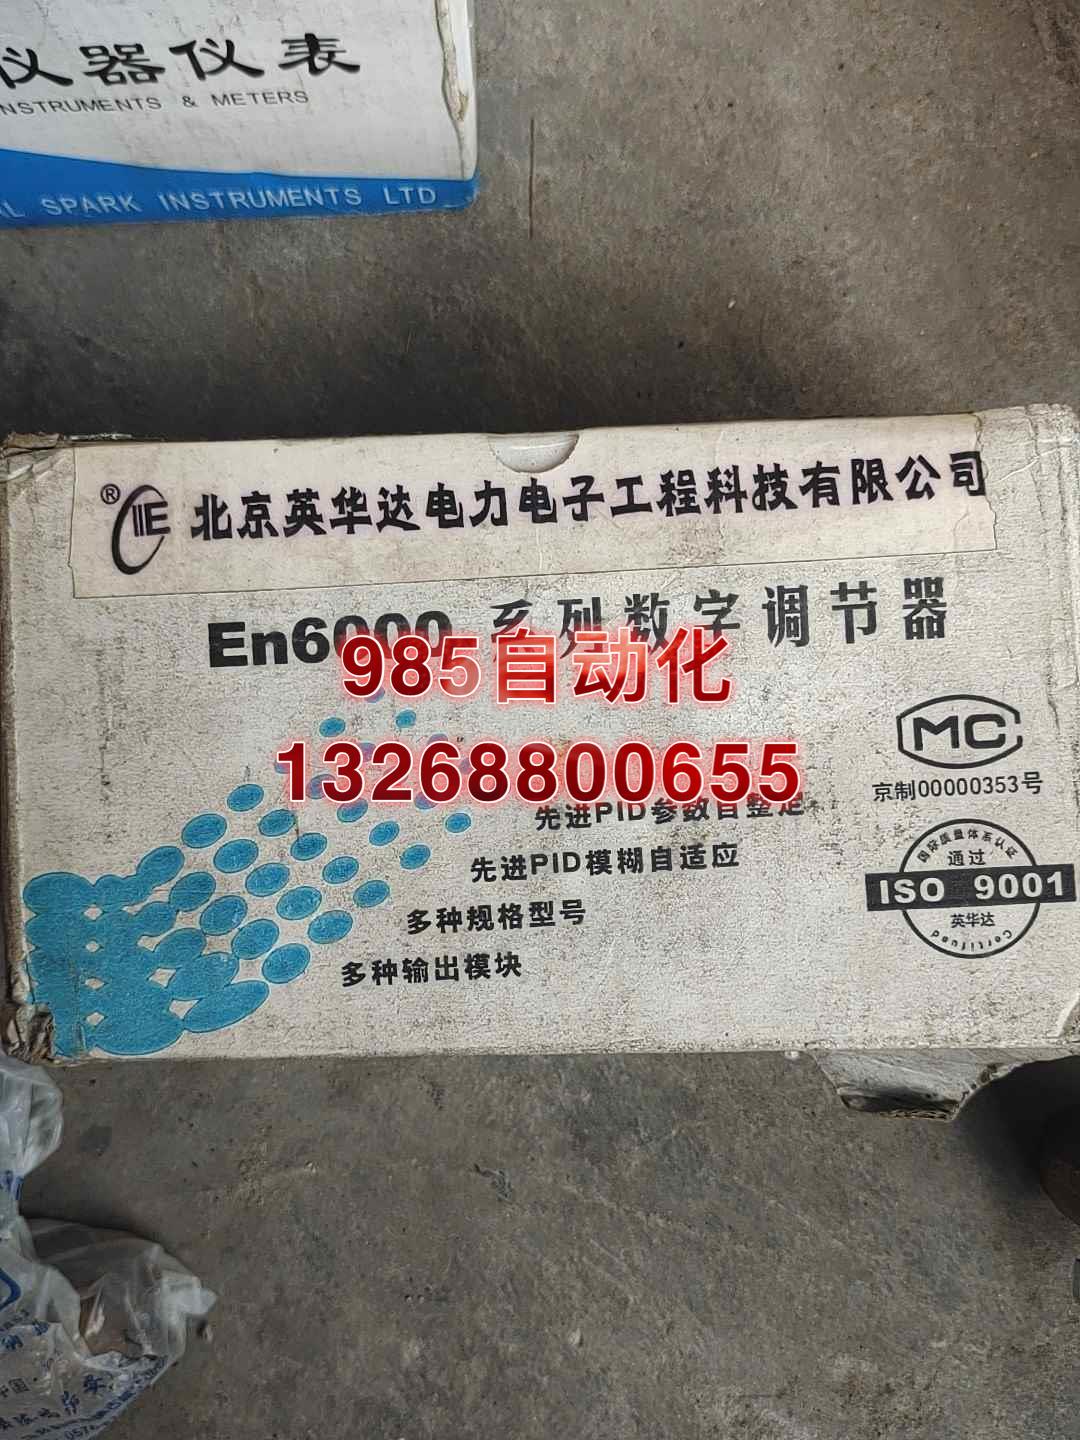 北京英华达，En6000 系列数字调节器，带包装带现货出售，询价